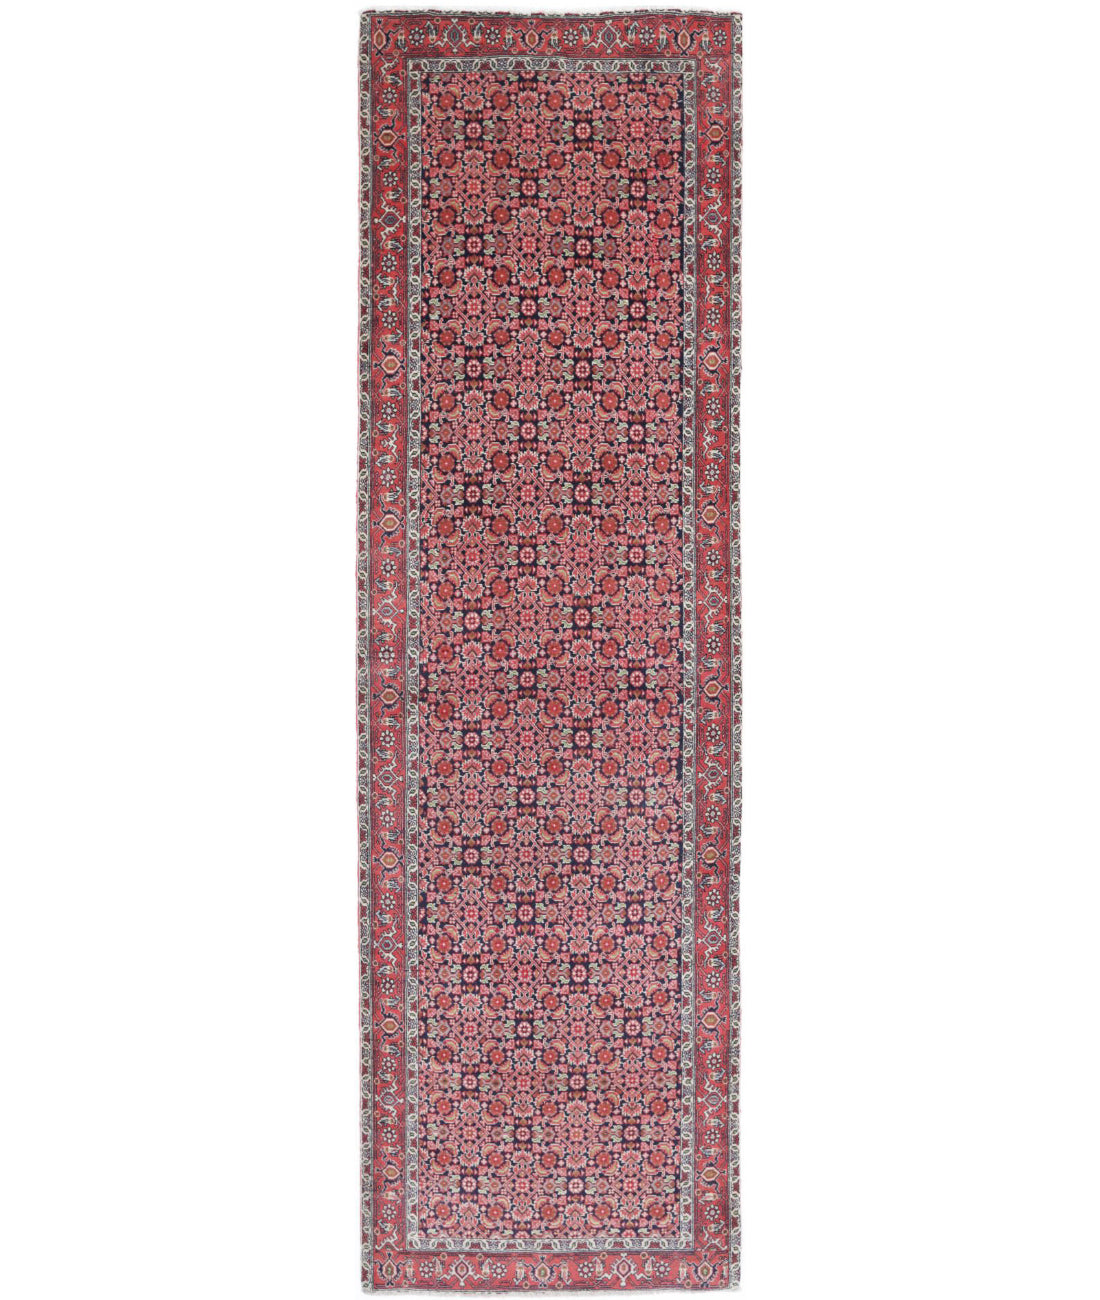 Bijar 2'8'' X 9'2'' Hand-Knotted Wool Rug 2'8'' x 9'2'' (80 X 275) / Blue / Red